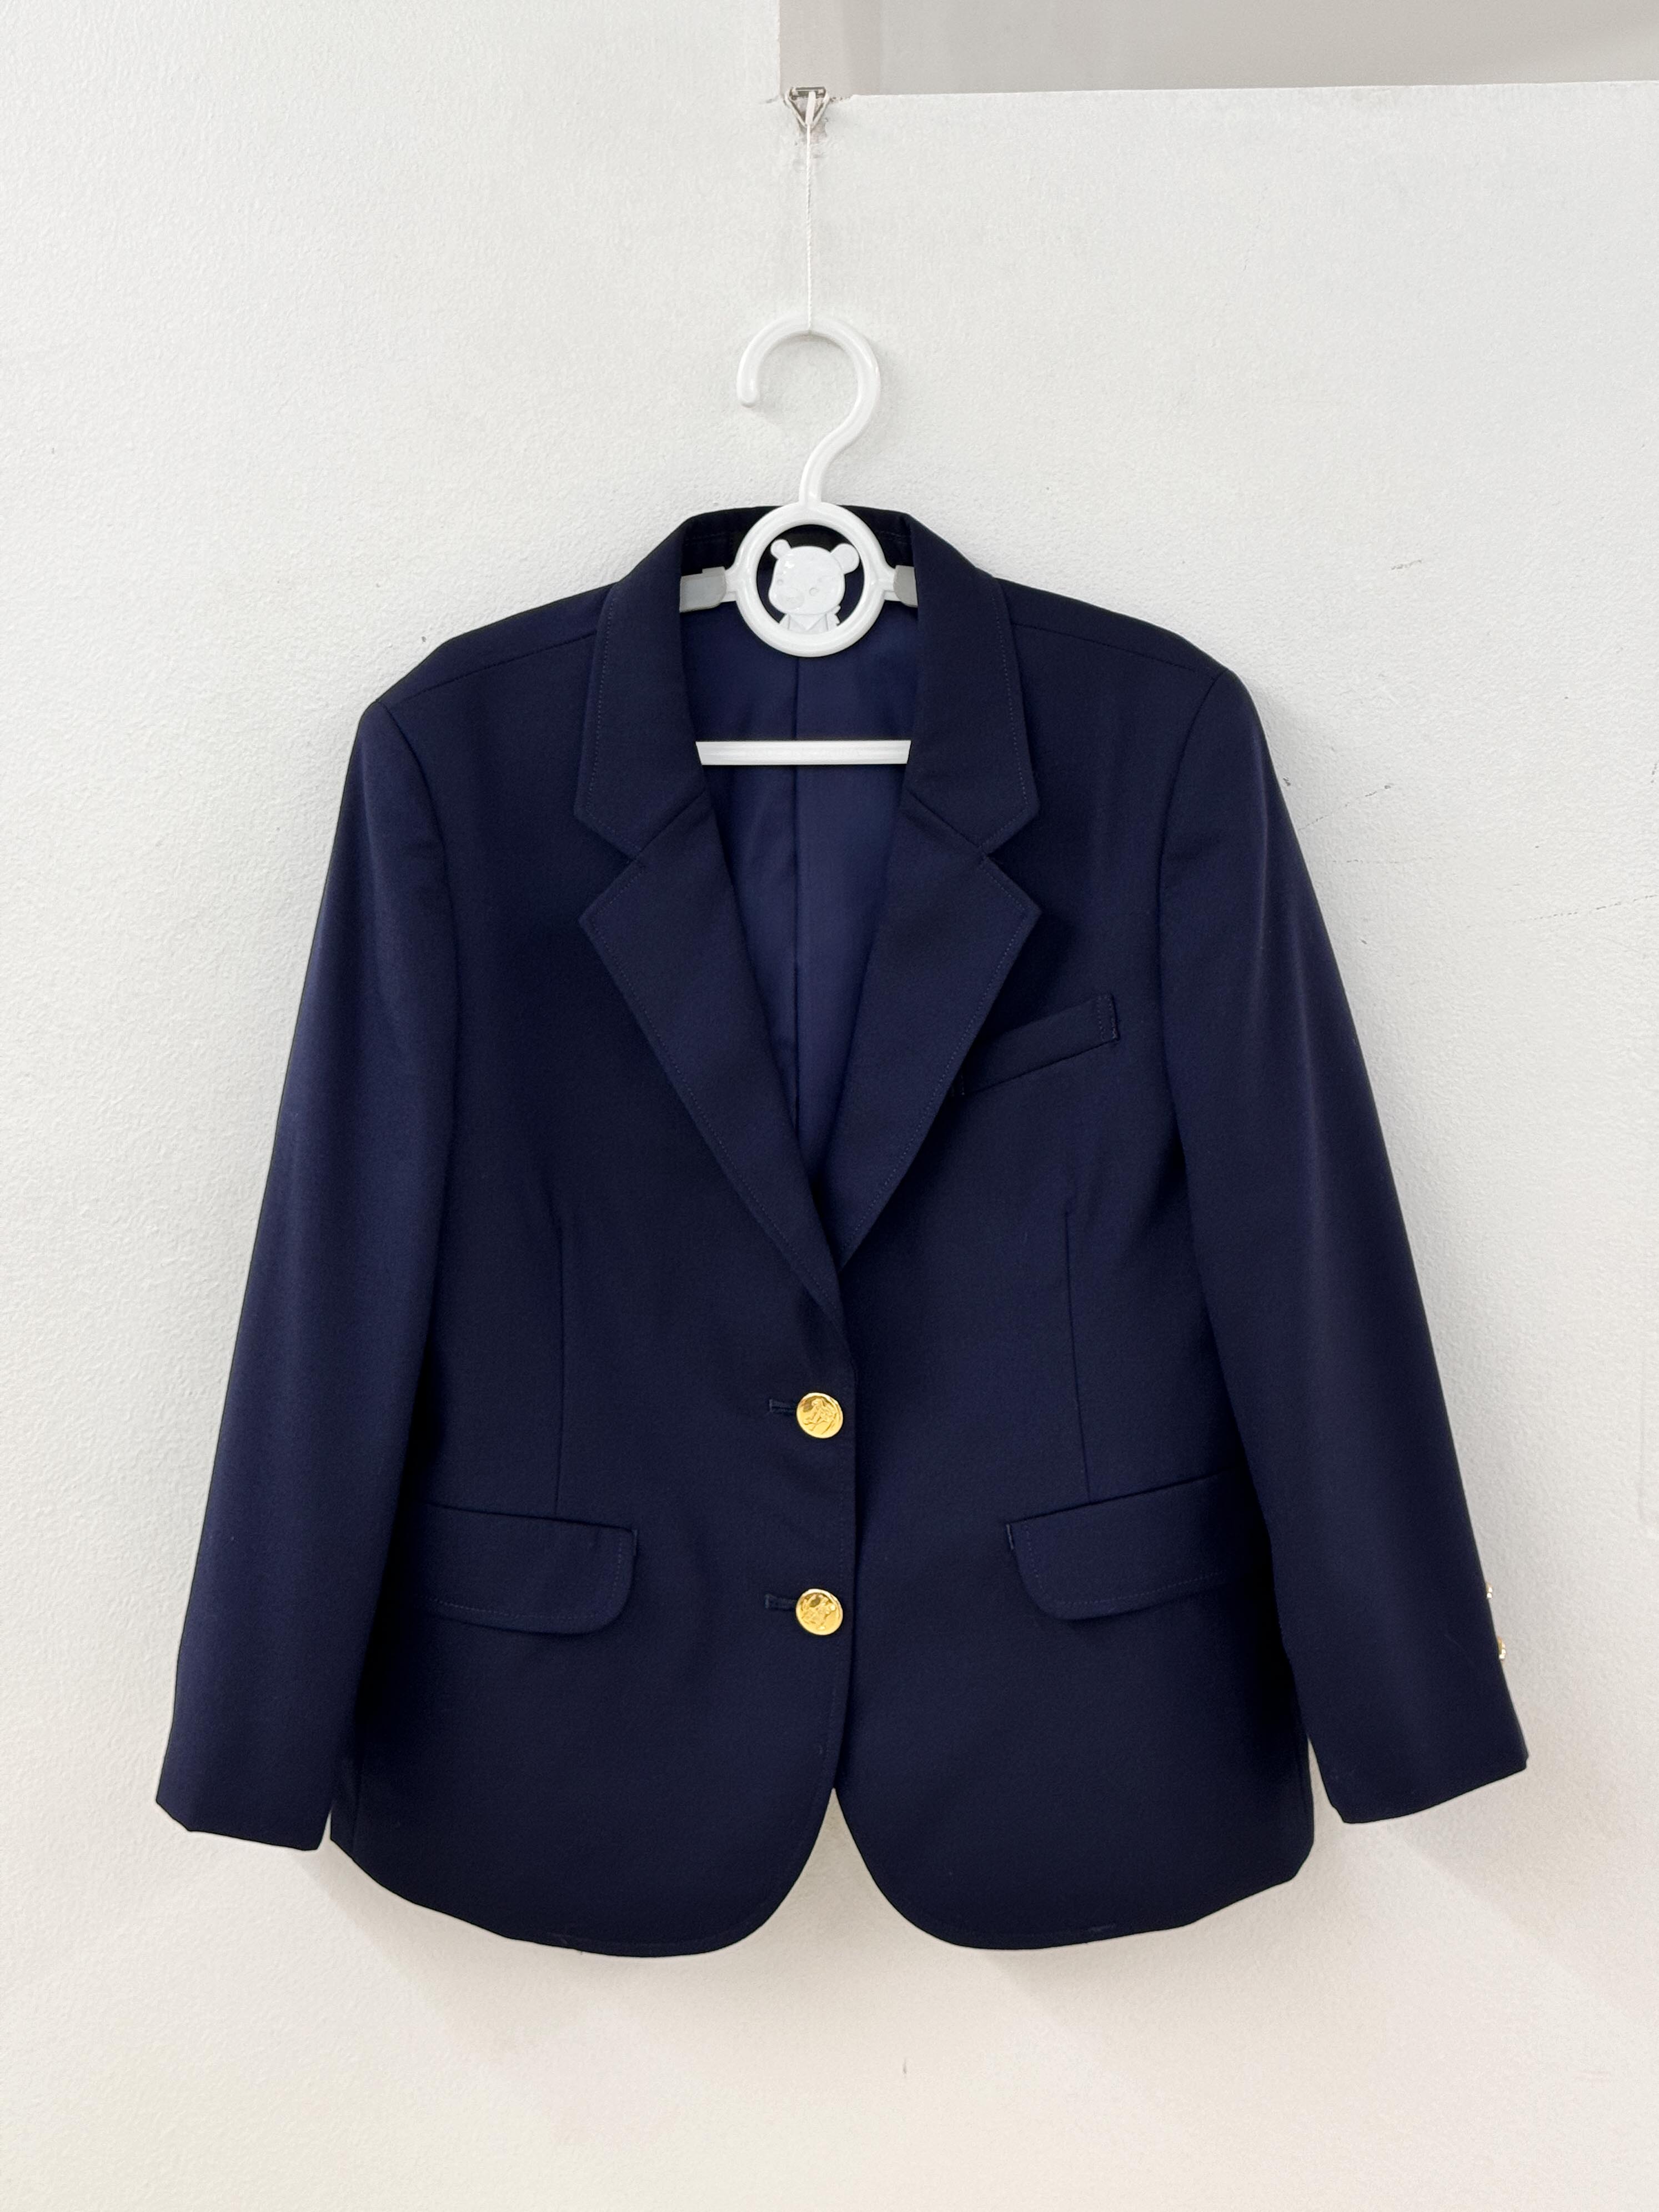 Burberry navy jacket 120 size